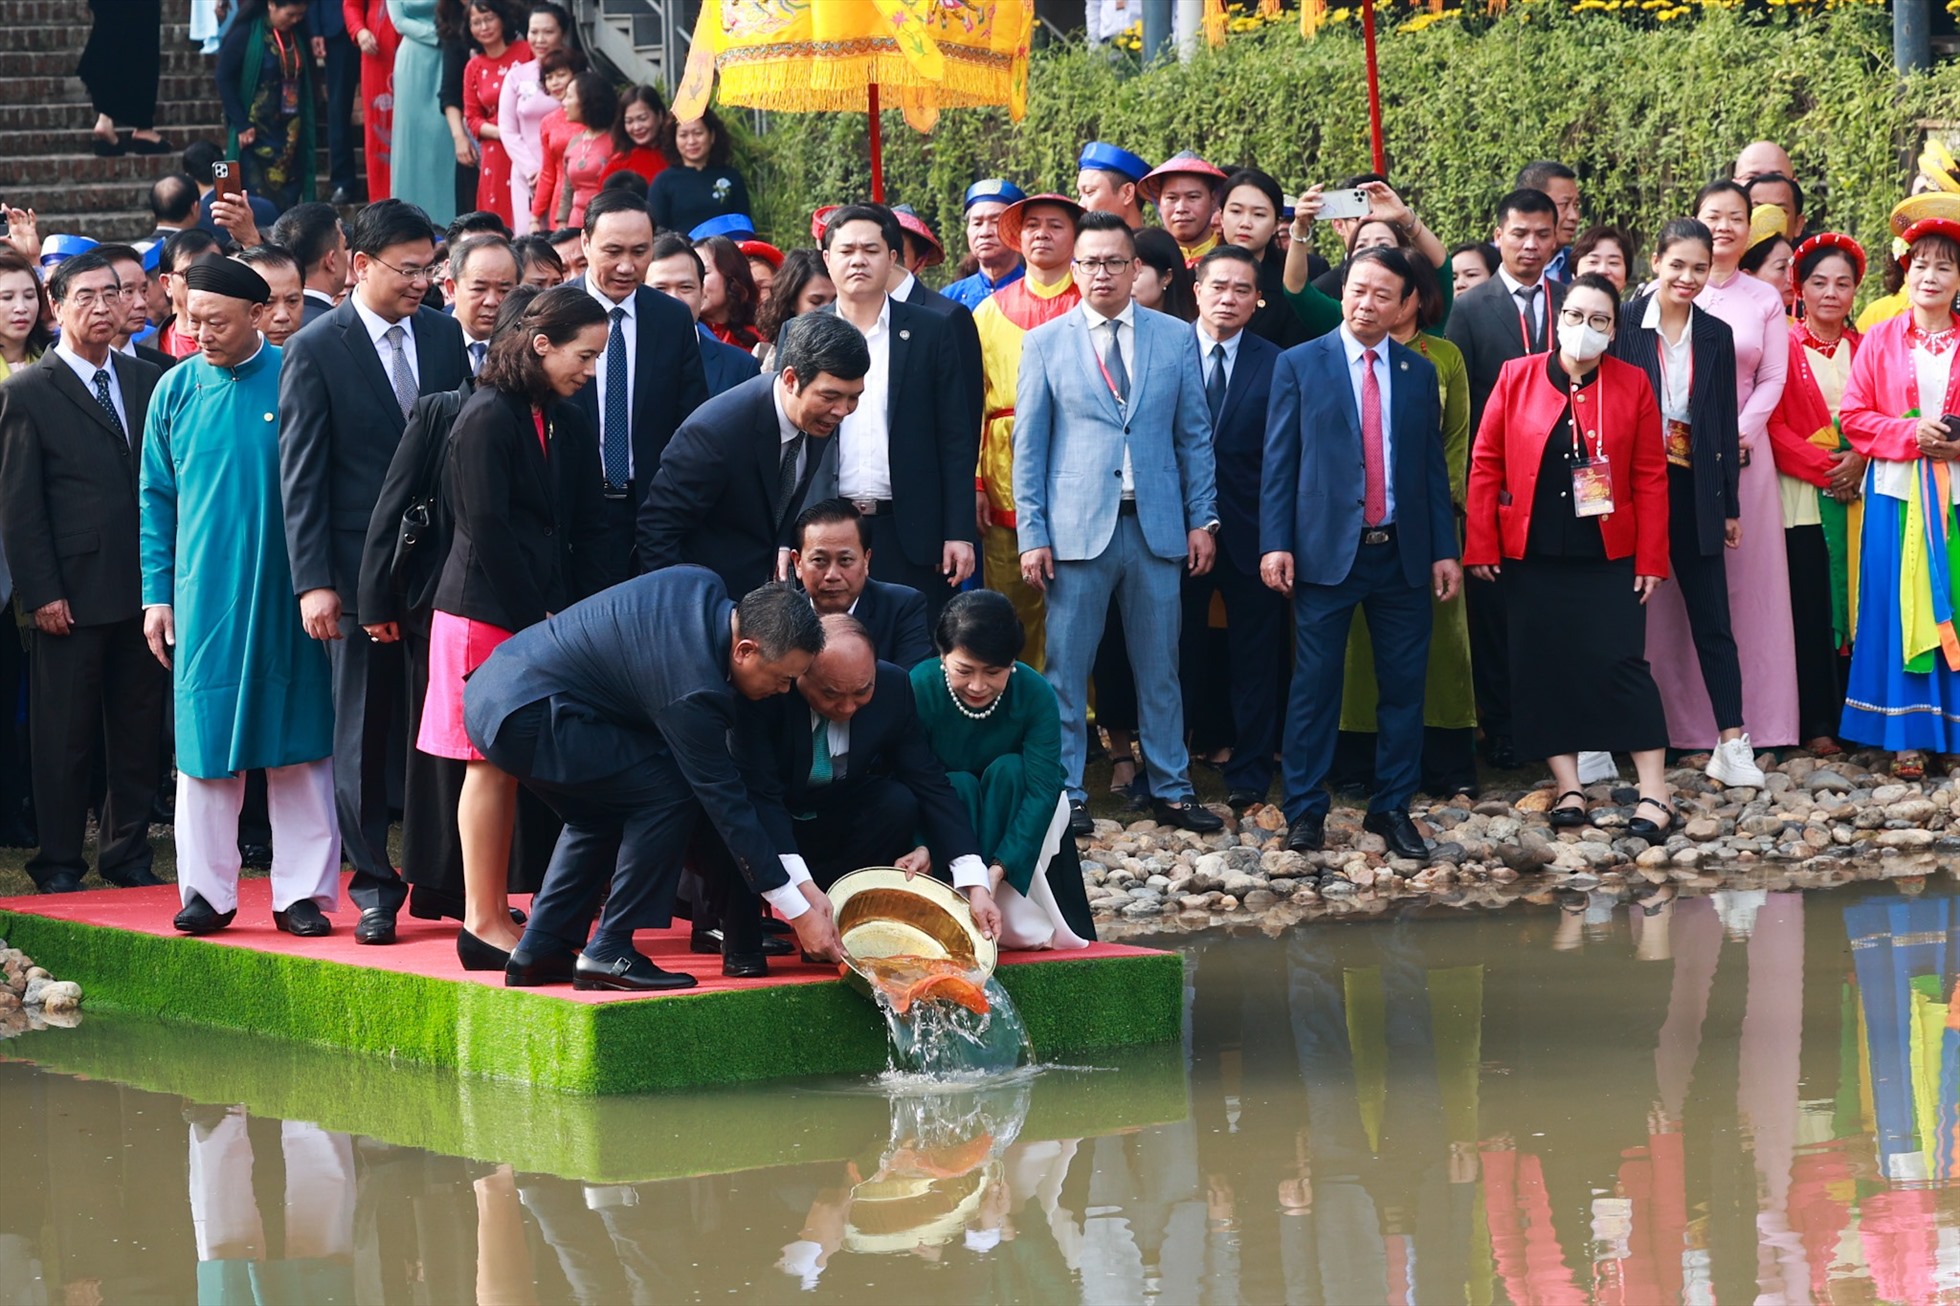 Sau khi tiến hành lễ dâng hương tại Điện Kính Thiên, Chủ tịch nước chủ trì nghi lễ thả cá chép truyền thống tại Hồ Sen - dấu tích dòng sông cổ trong khu di tích Hoàng thành Thăng Long. Ảnh: Hải Nguyễn